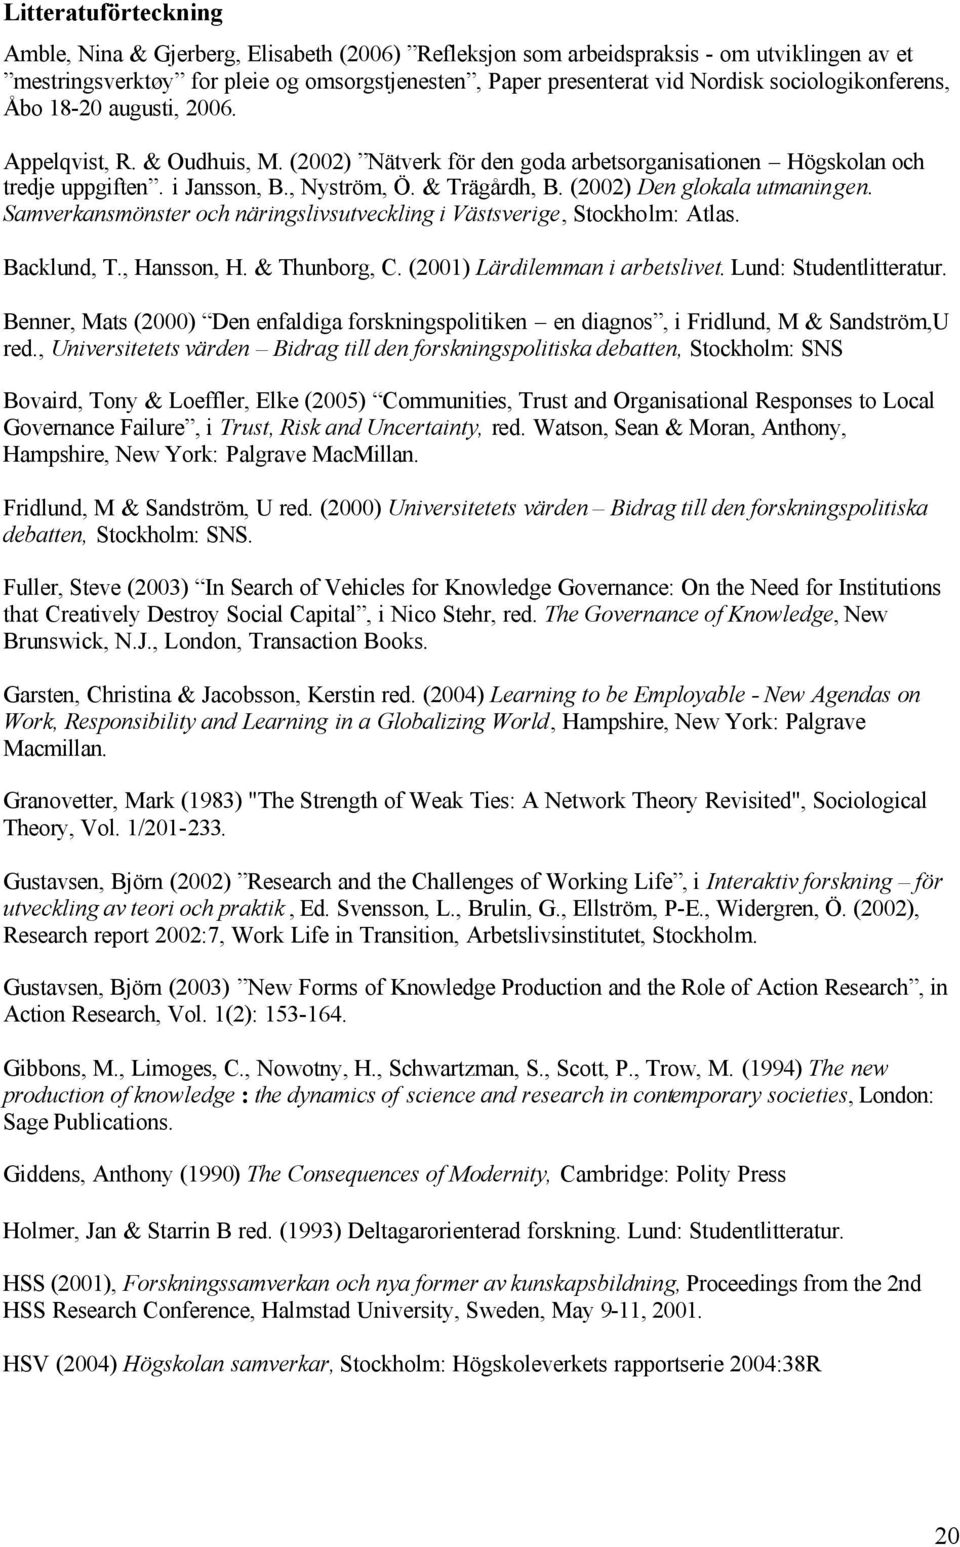 (2002) Den glokala utmaningen. Samverkansmönster och näringslivsutveckling i Västsverige, Stockholm: Atlas. Backlund, T., Hansson, H. & Thunborg, C. (2001) Lärdilemman i arbetslivet.